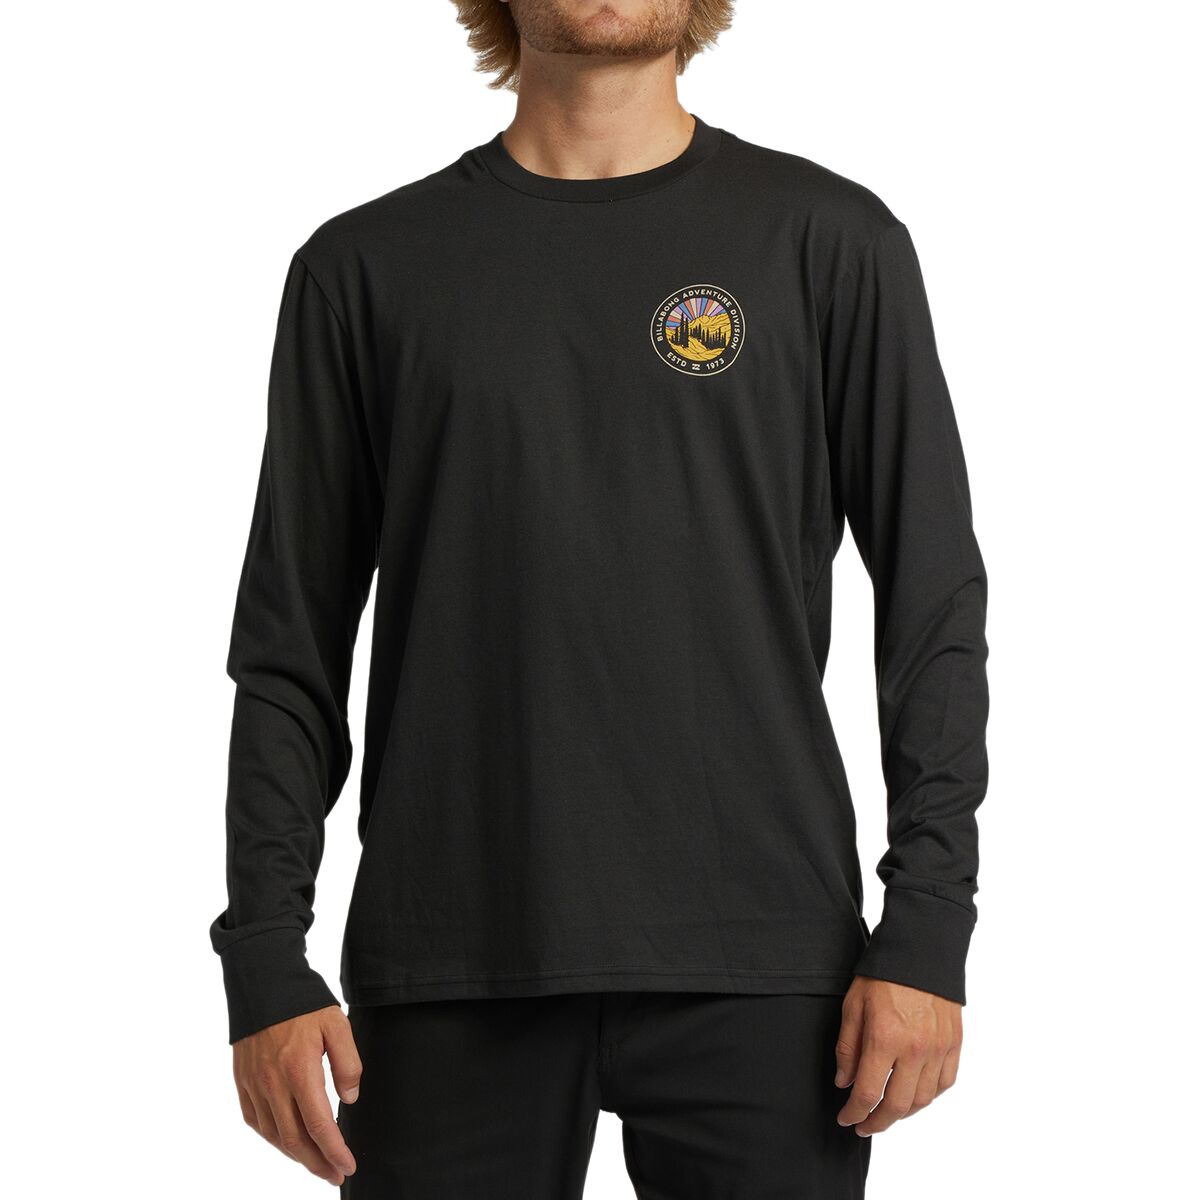 Rockies Long-Sleeve T-Shirt - Men